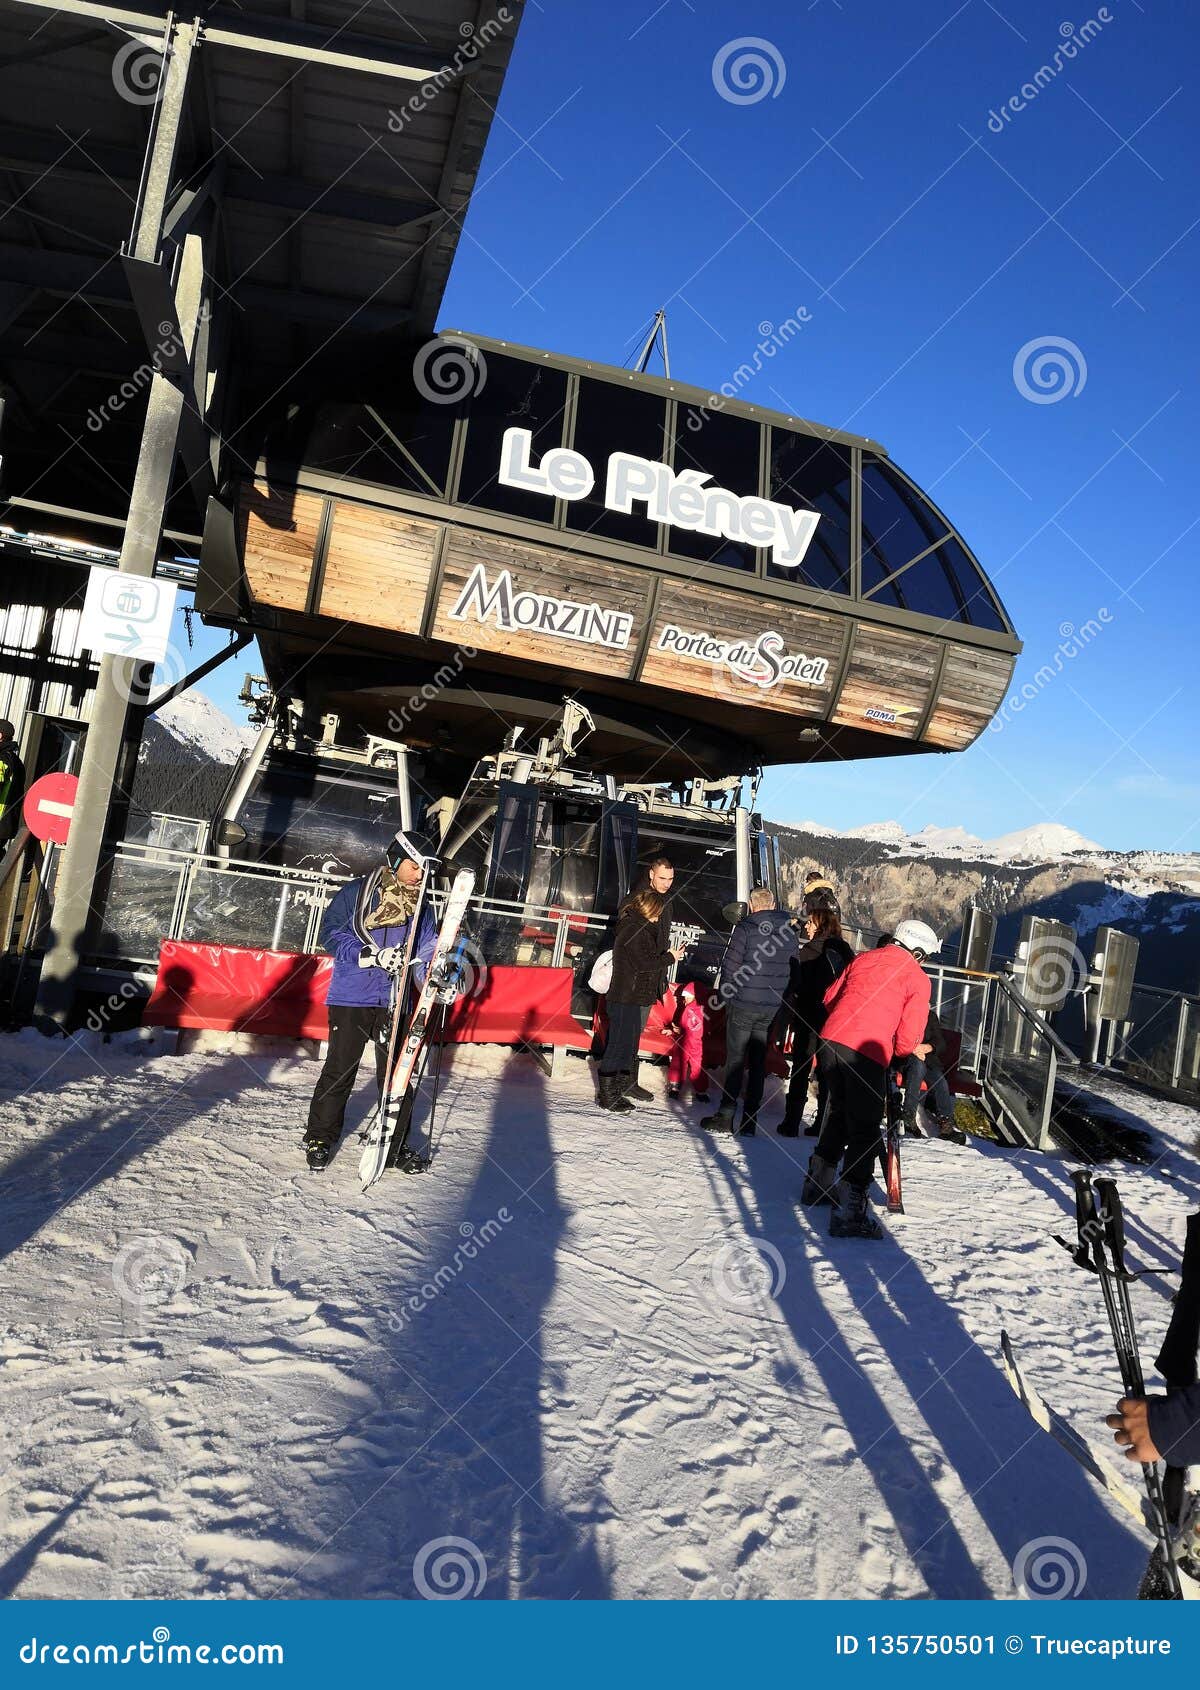 puma ski lift